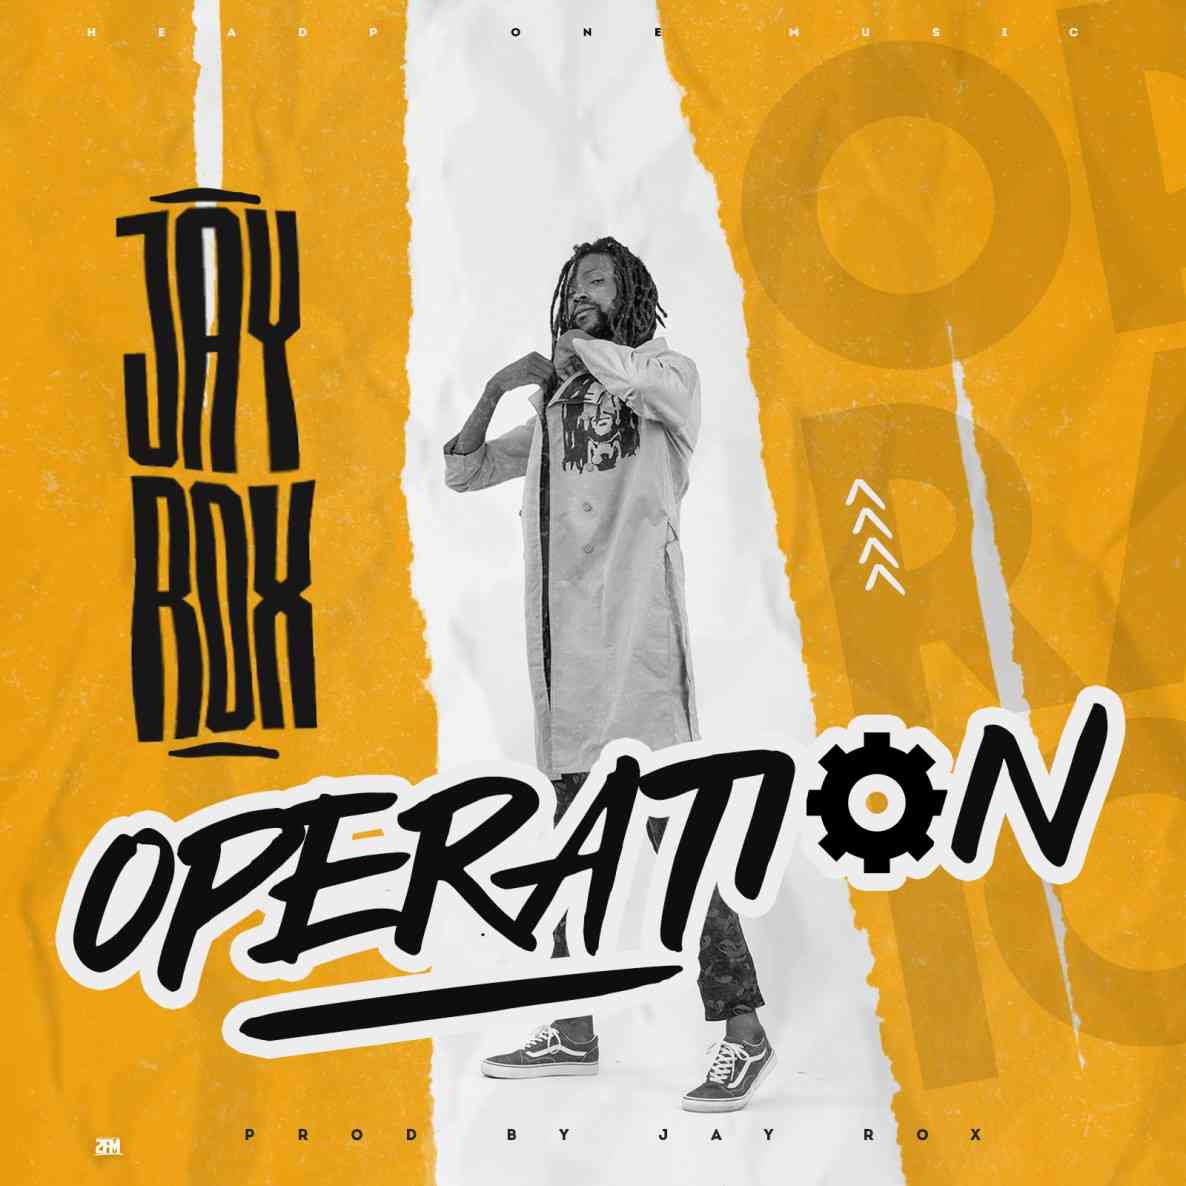 Jay Rox – “Operation”